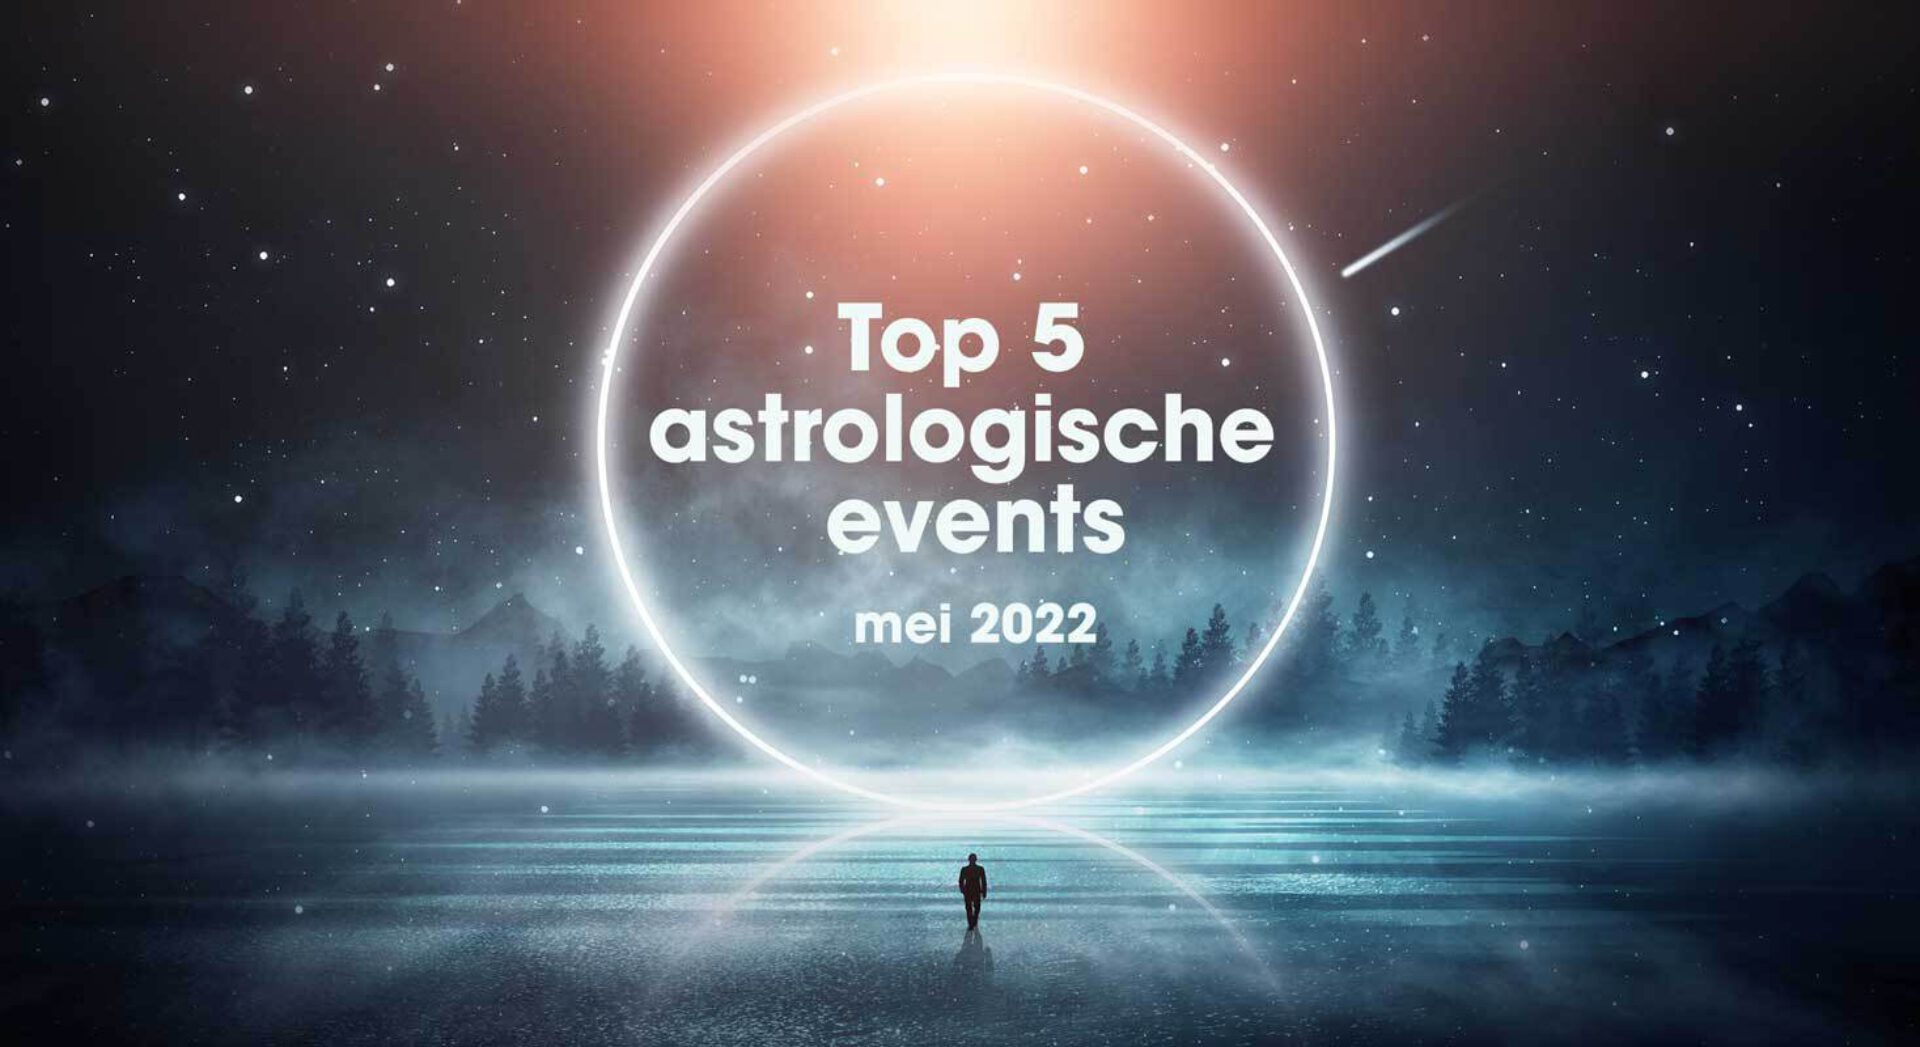 Top 5 astrologische transits en events in mei 2022